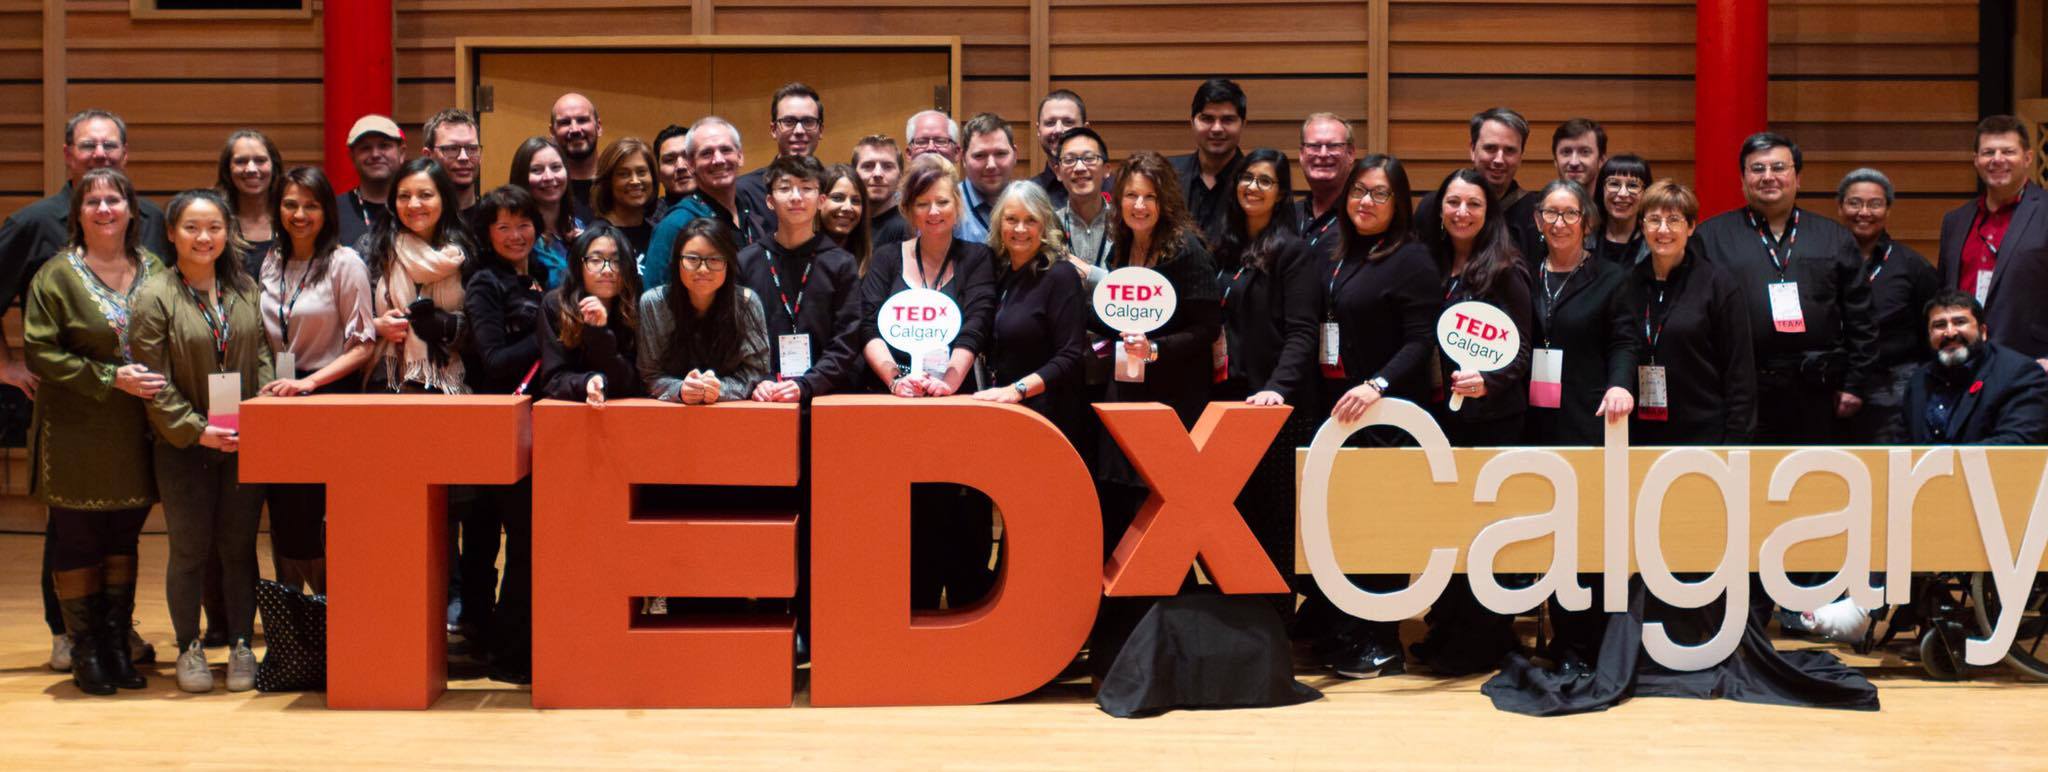 TEDxCalgary Volunteers